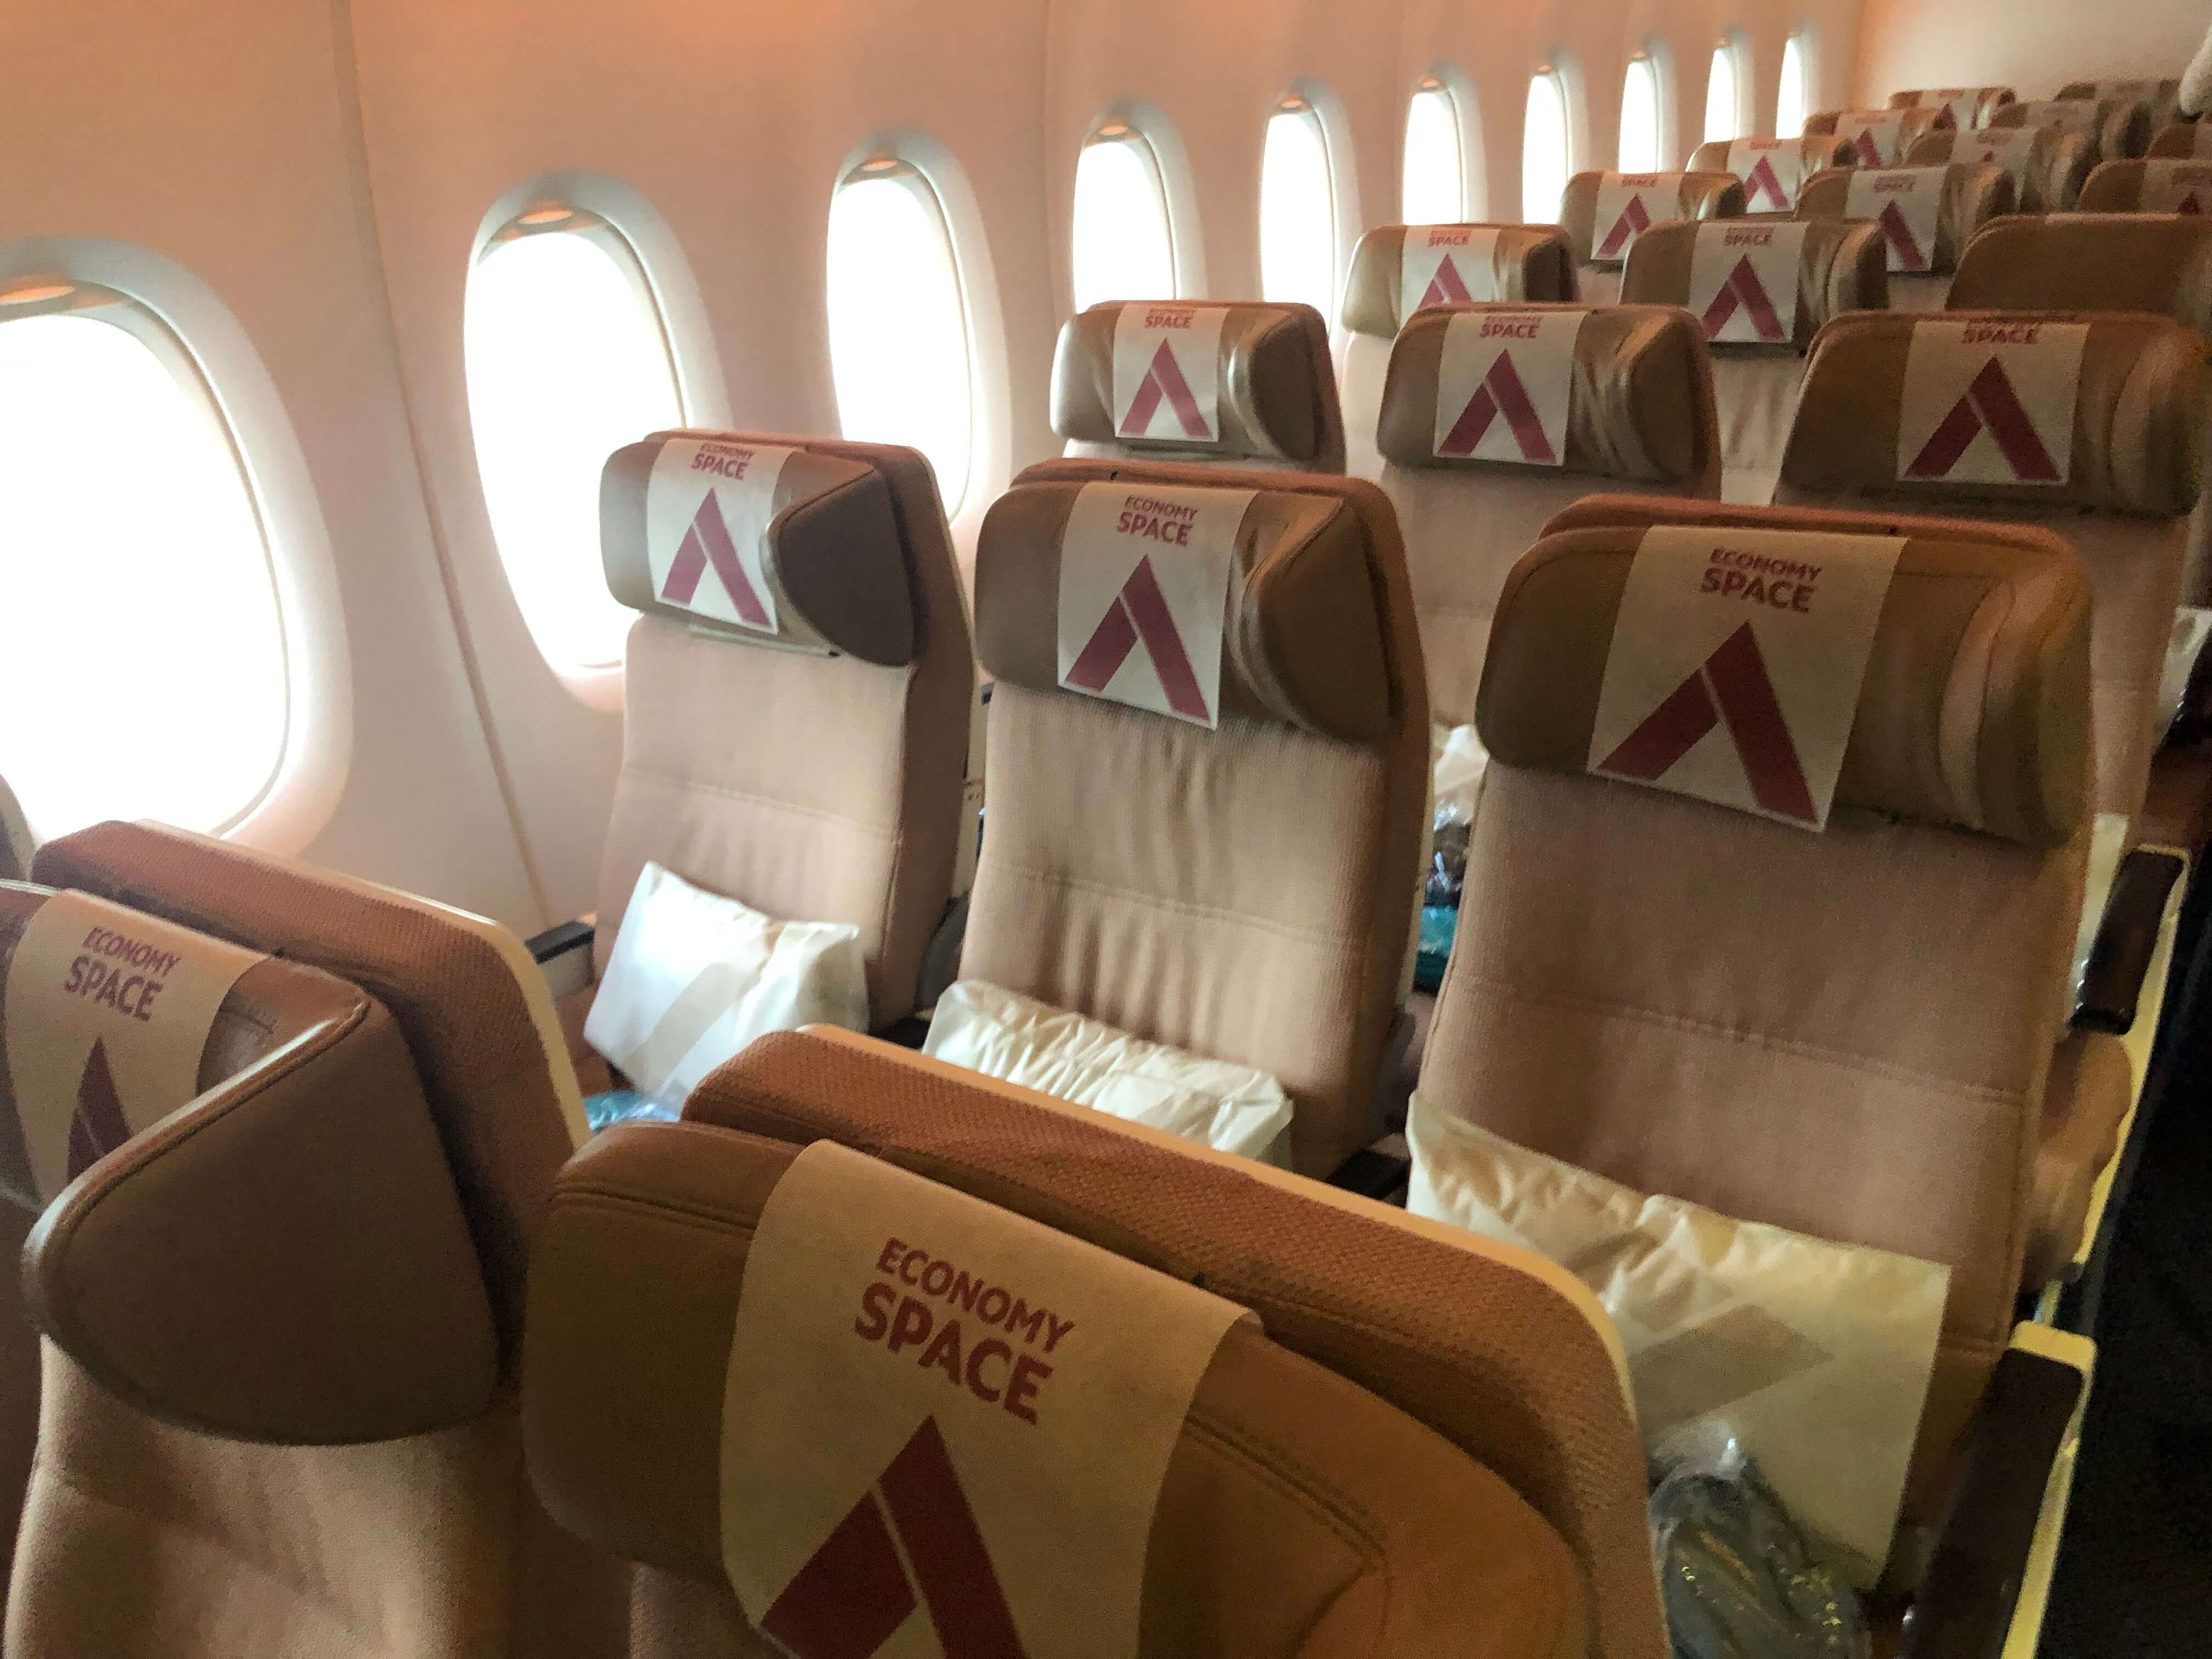 Economy Space seats on Etihad Airways A380